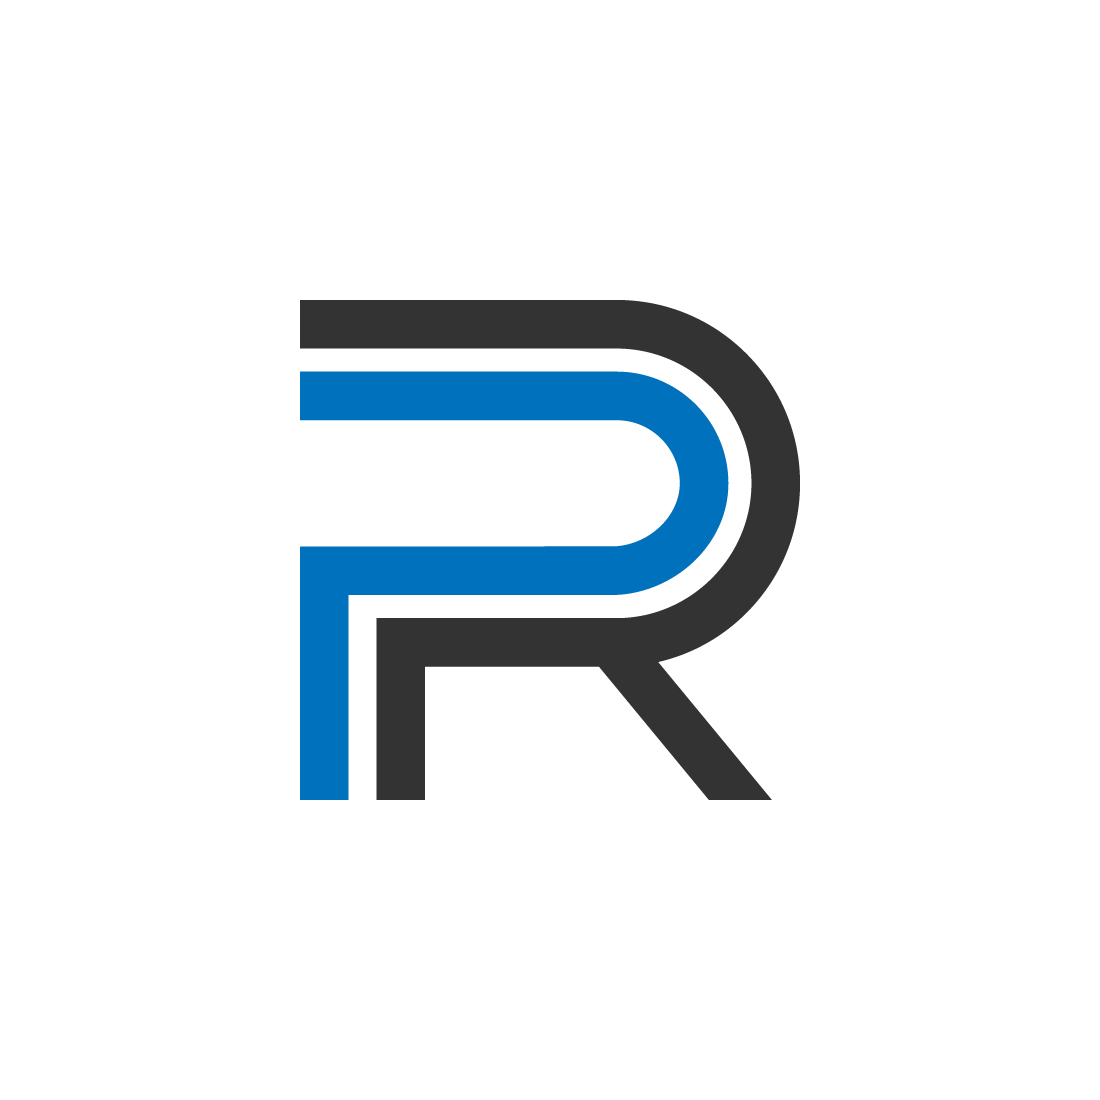 PR logo design cover image.